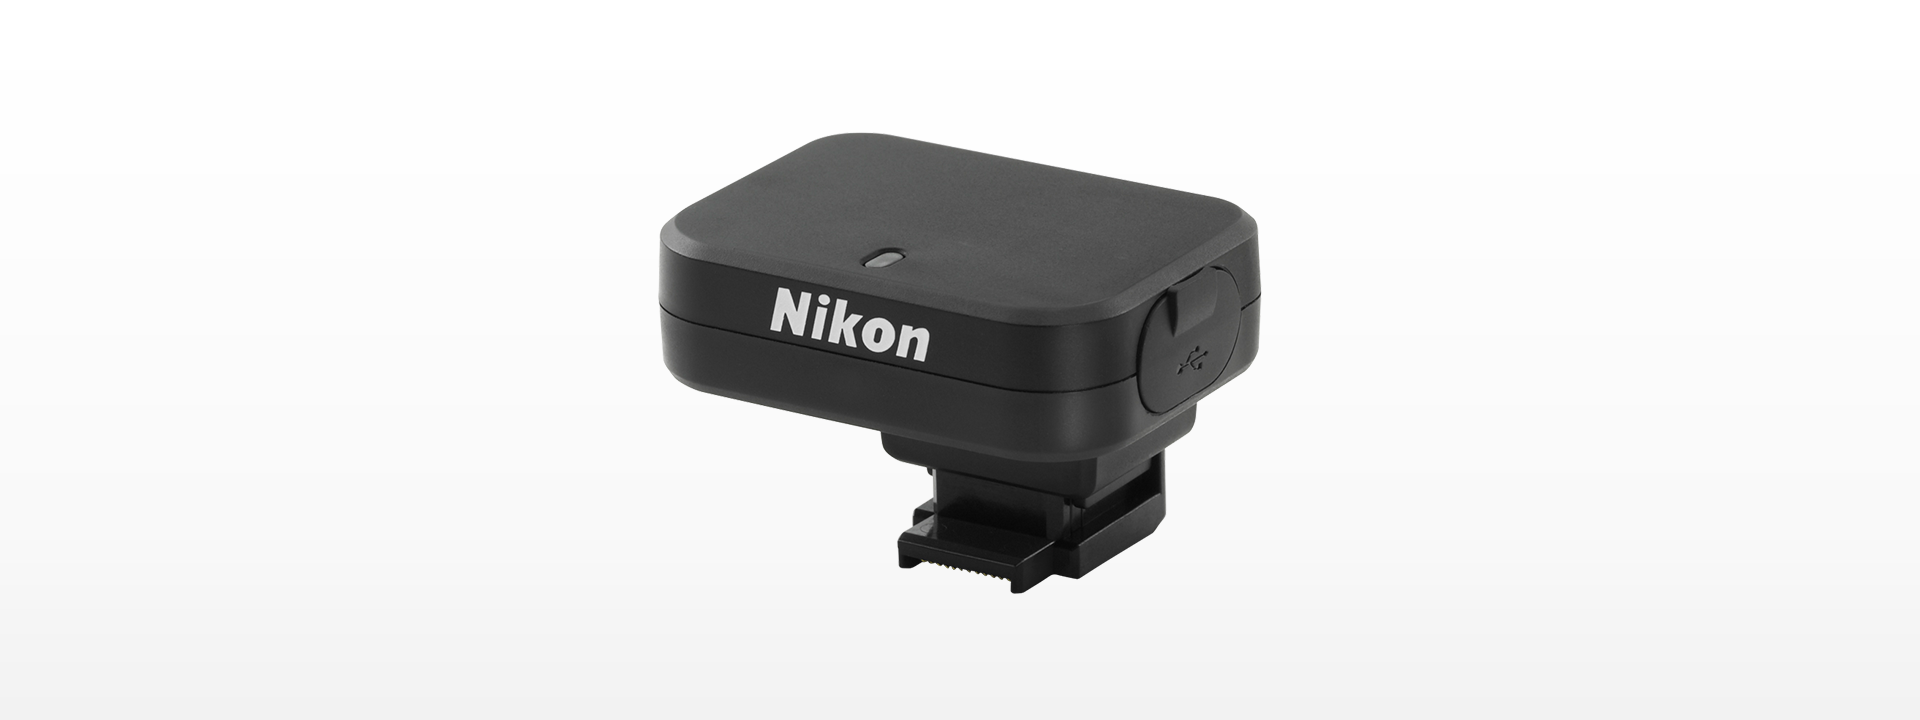 Nikon GPSユニット GP-N100